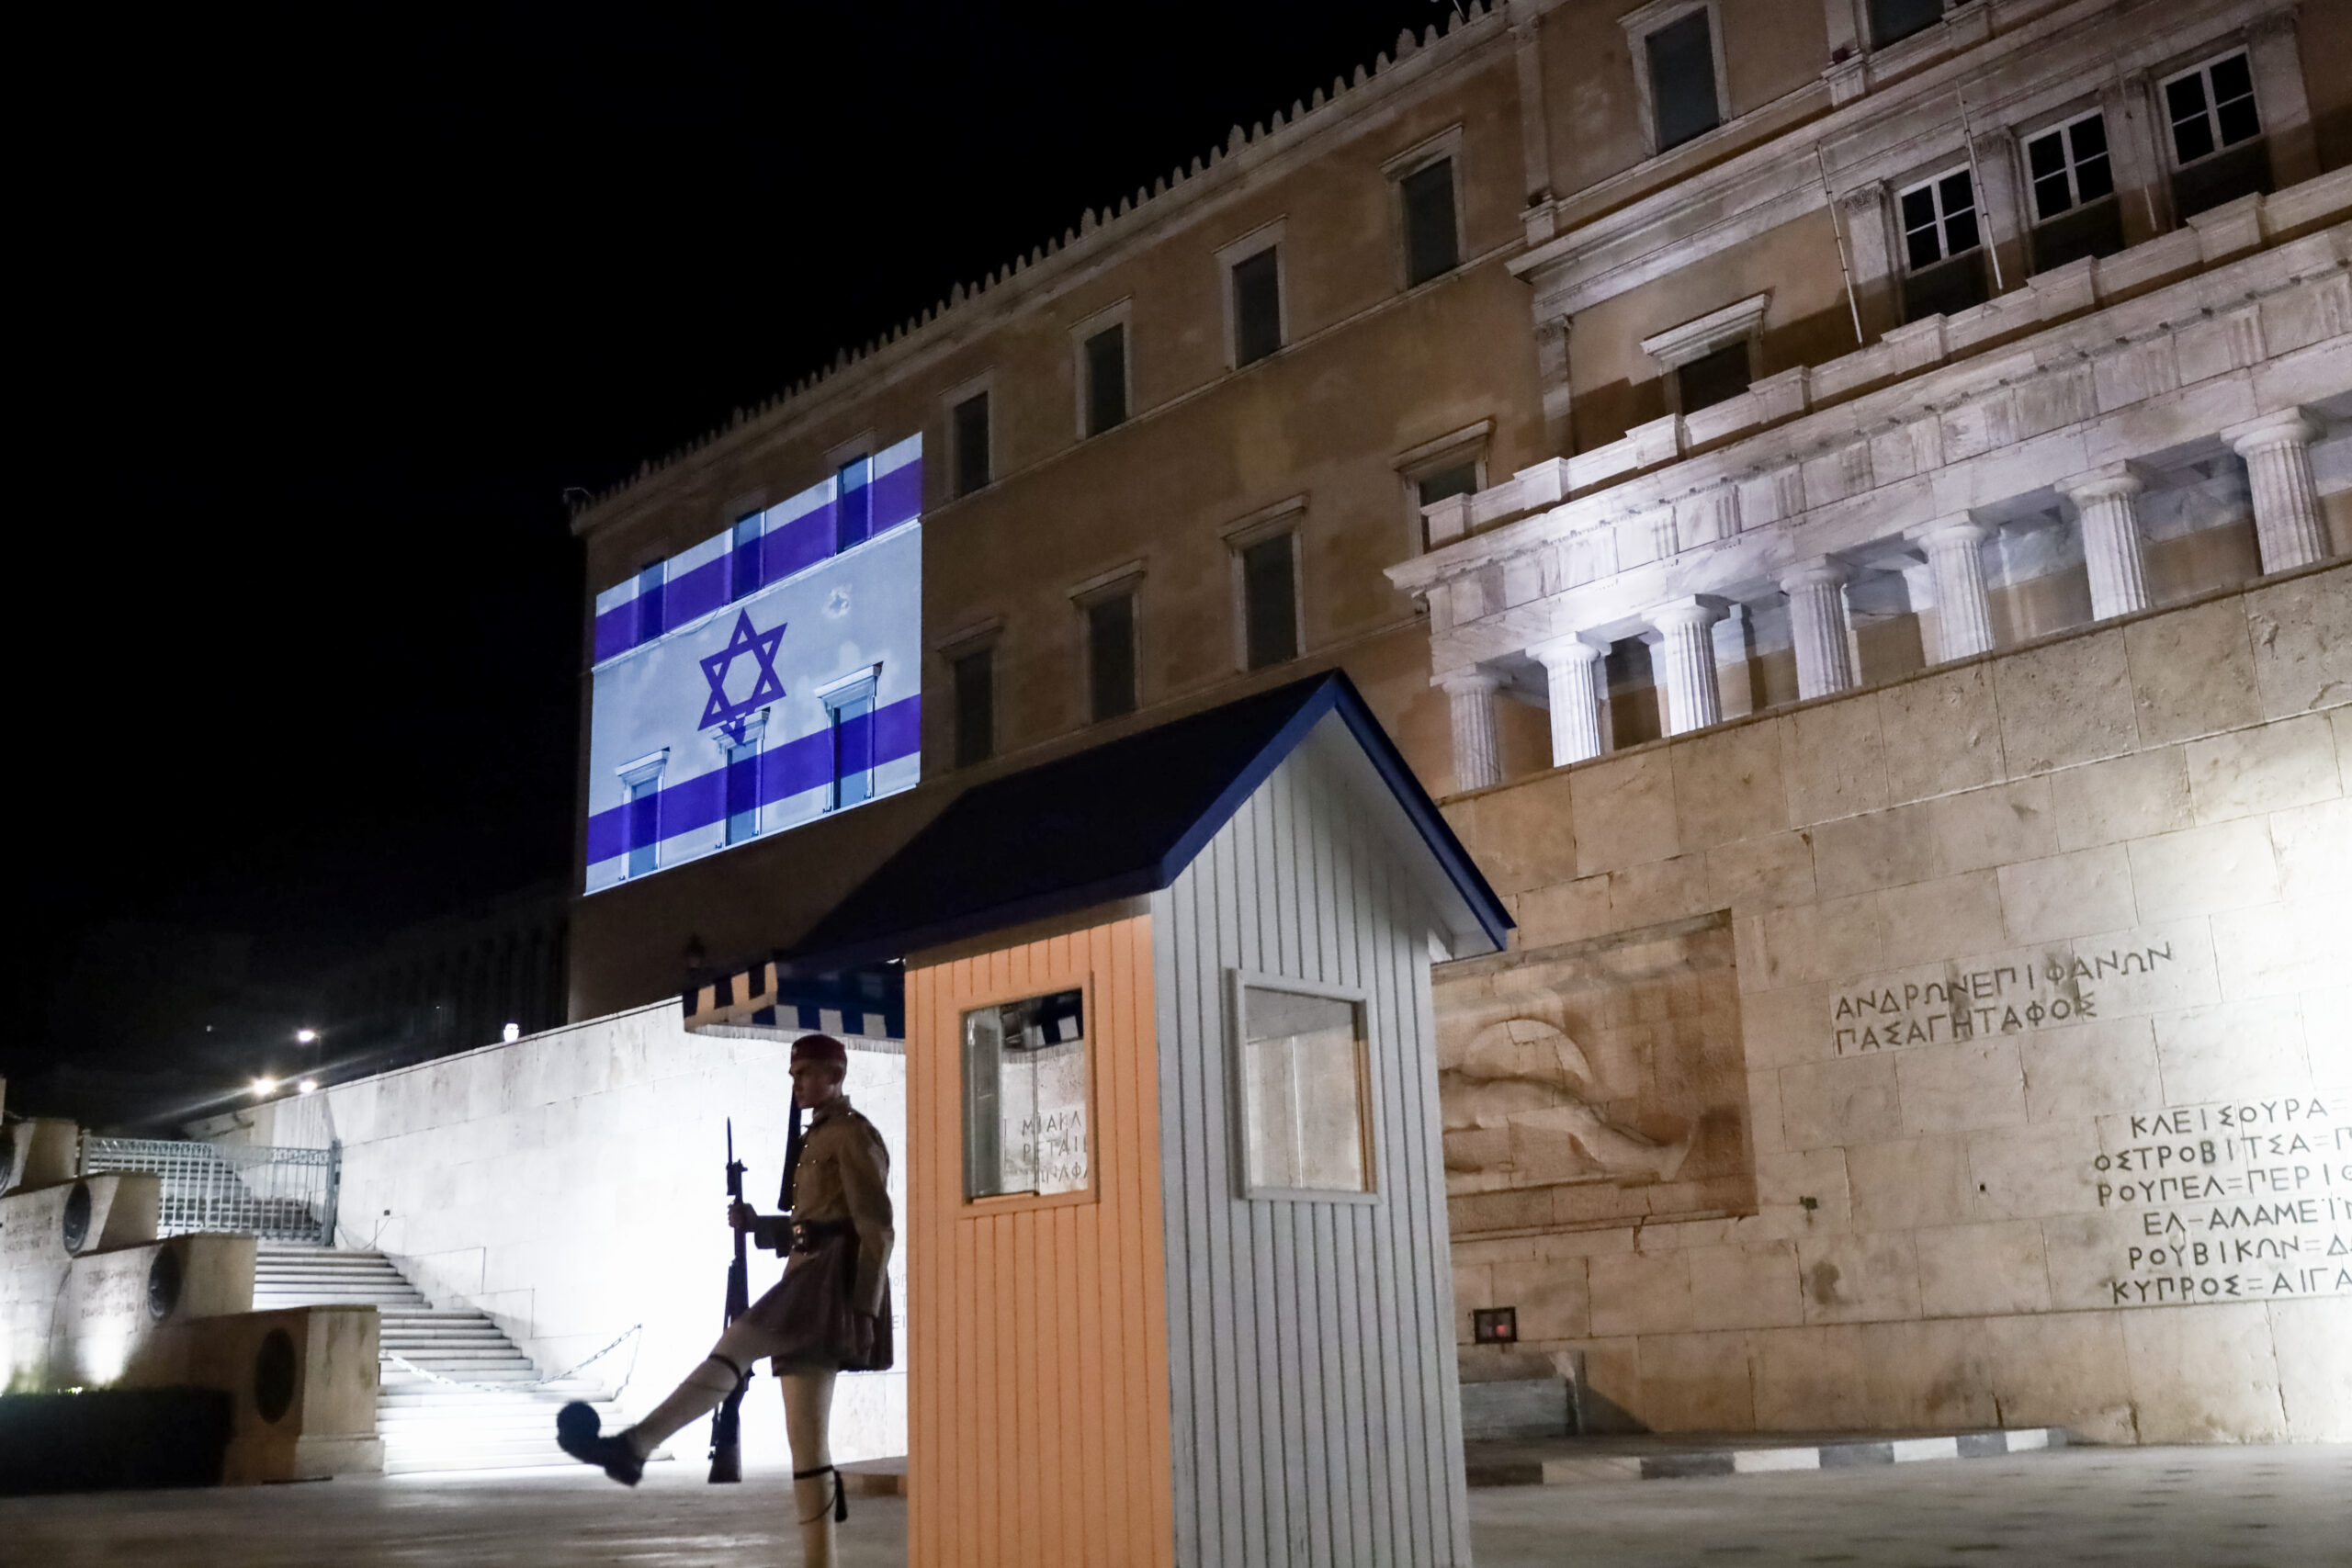 Στα χρώματα της σημαίας του Ισραήλ φωταγωγήθηκε η Βουλή σε ένδειξη αλληλεγγύης για τα θύματα